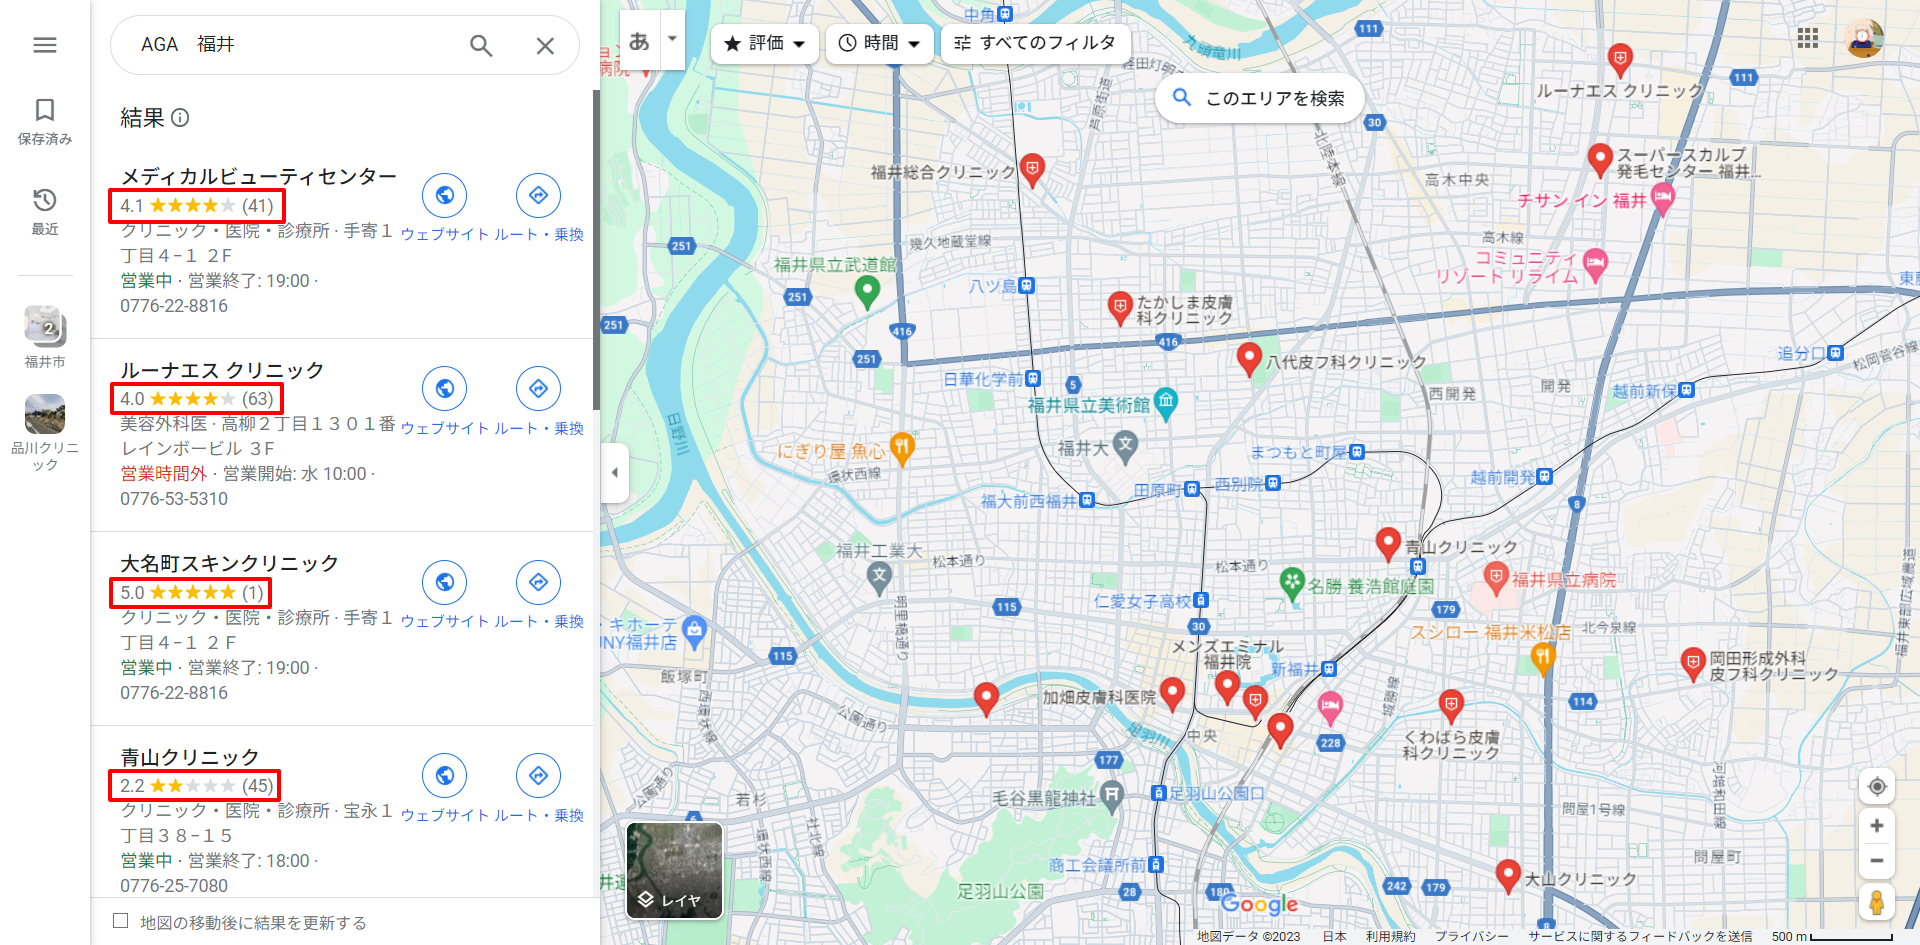 AGA福井Googleマップ